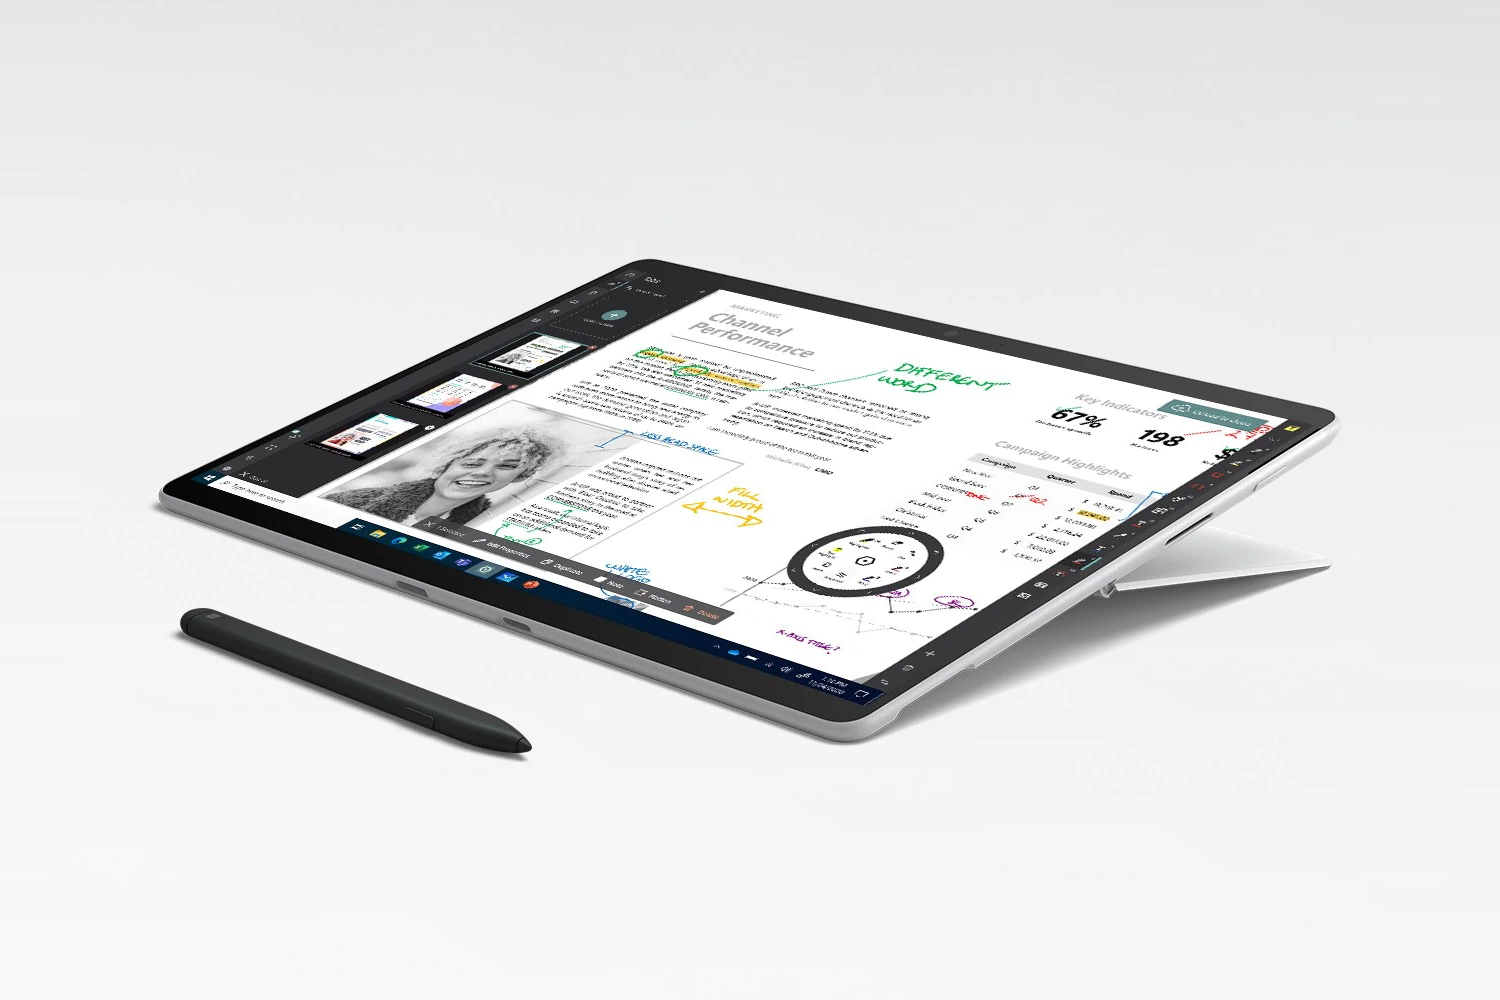  Microsoft Surface Pro X - 13 Touchscreen - SQ 2 - 16GB Memory  - 512GB SSD - WiFi + 4G LTE - Matte Black : Electronics